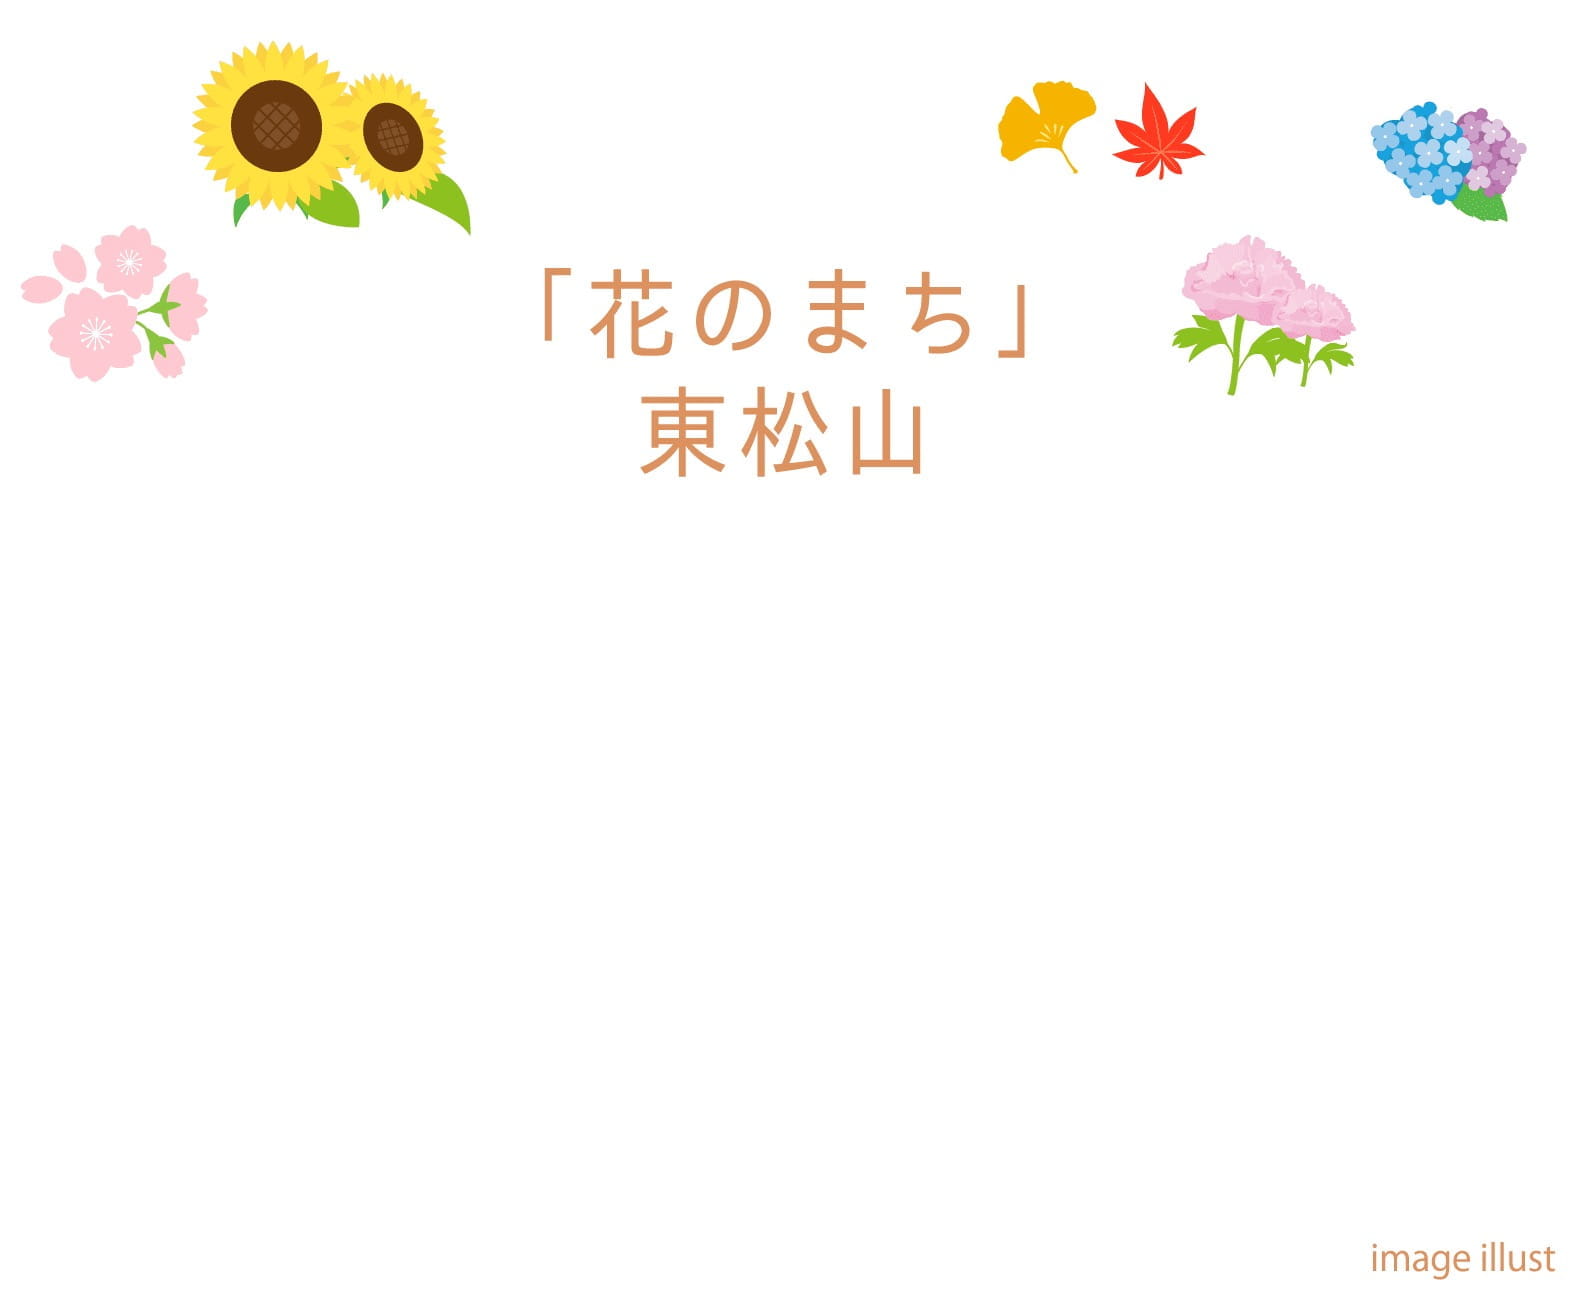 「花のまち」東松山